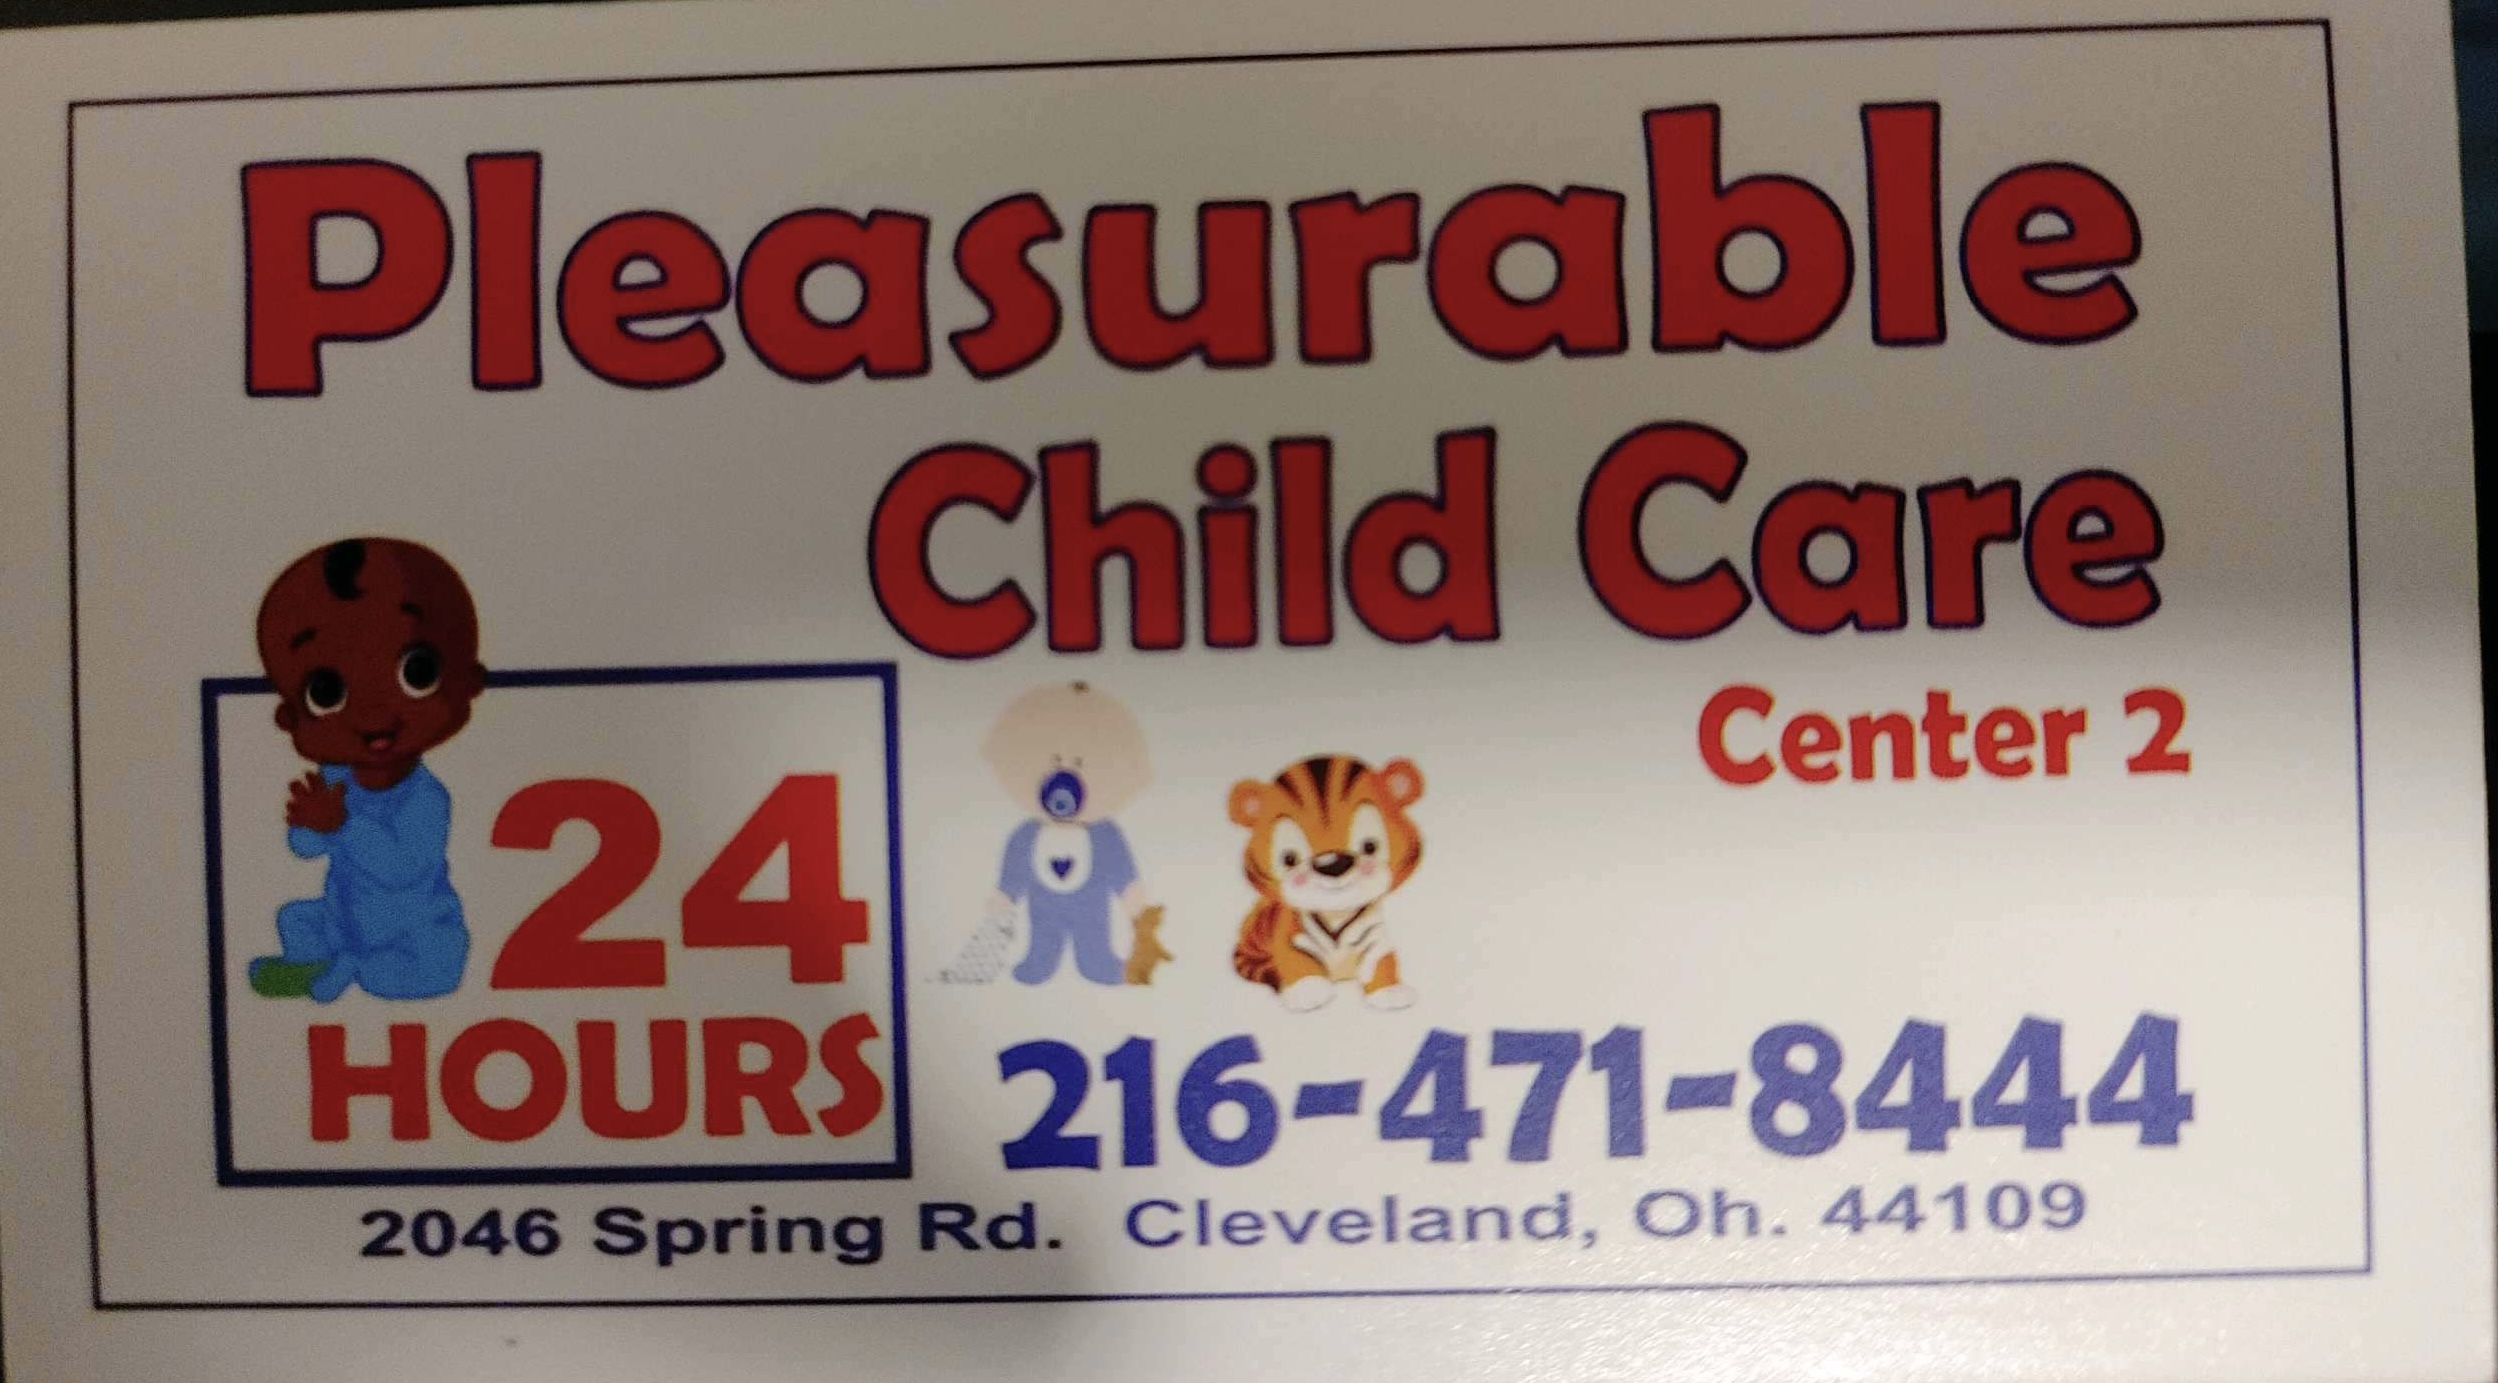 Pleasurable Child Care Center II logo